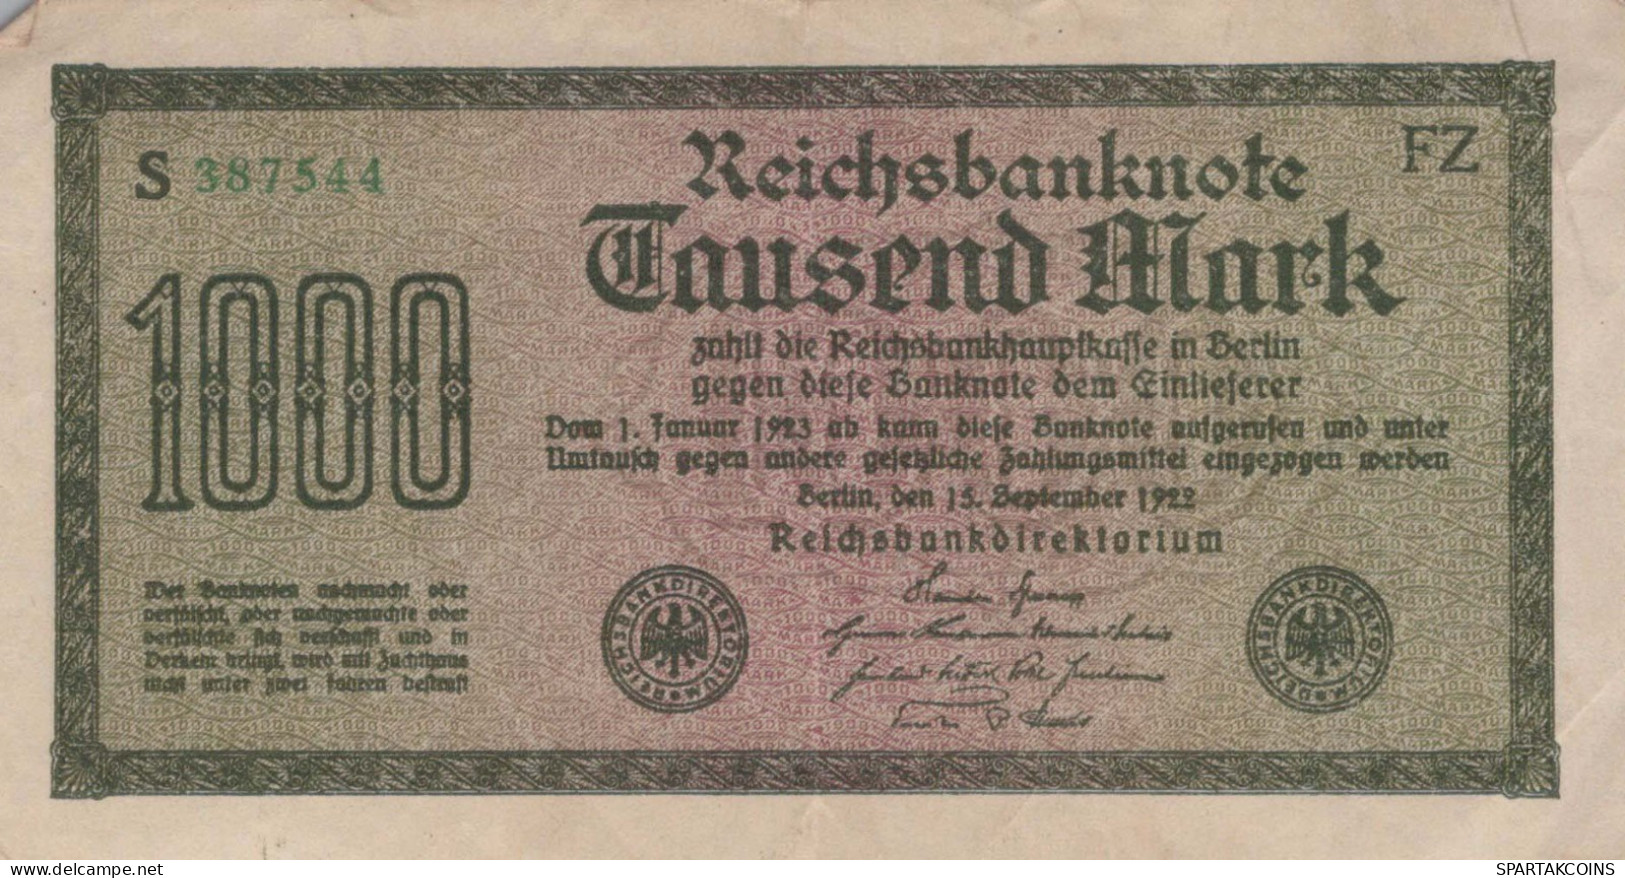 1000 MARK 1922 Stadt BERLIN DEUTSCHLAND Papiergeld Banknote #PL029 - [11] Local Banknote Issues